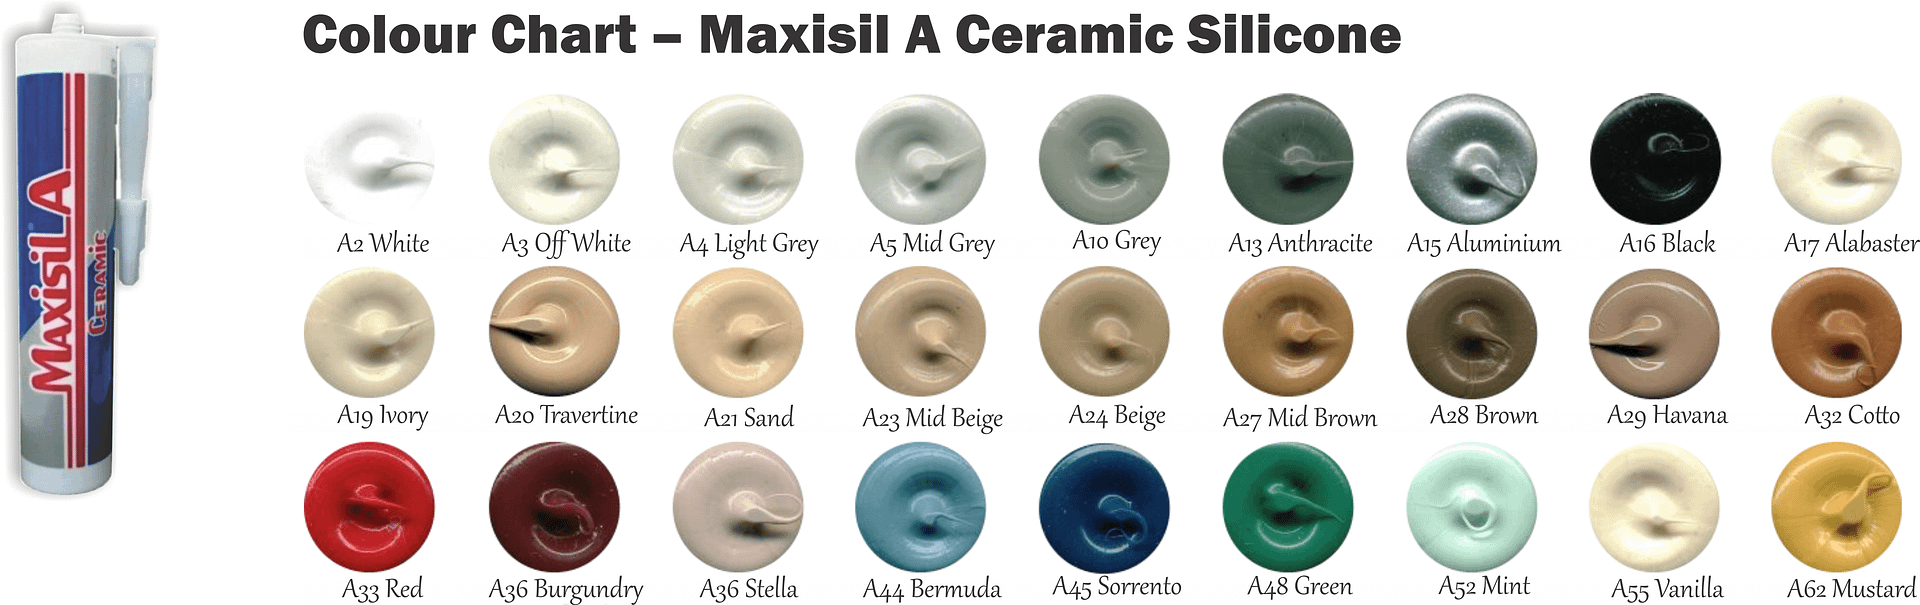 Colour Chart – Maxisil A Ceramic Silicone 